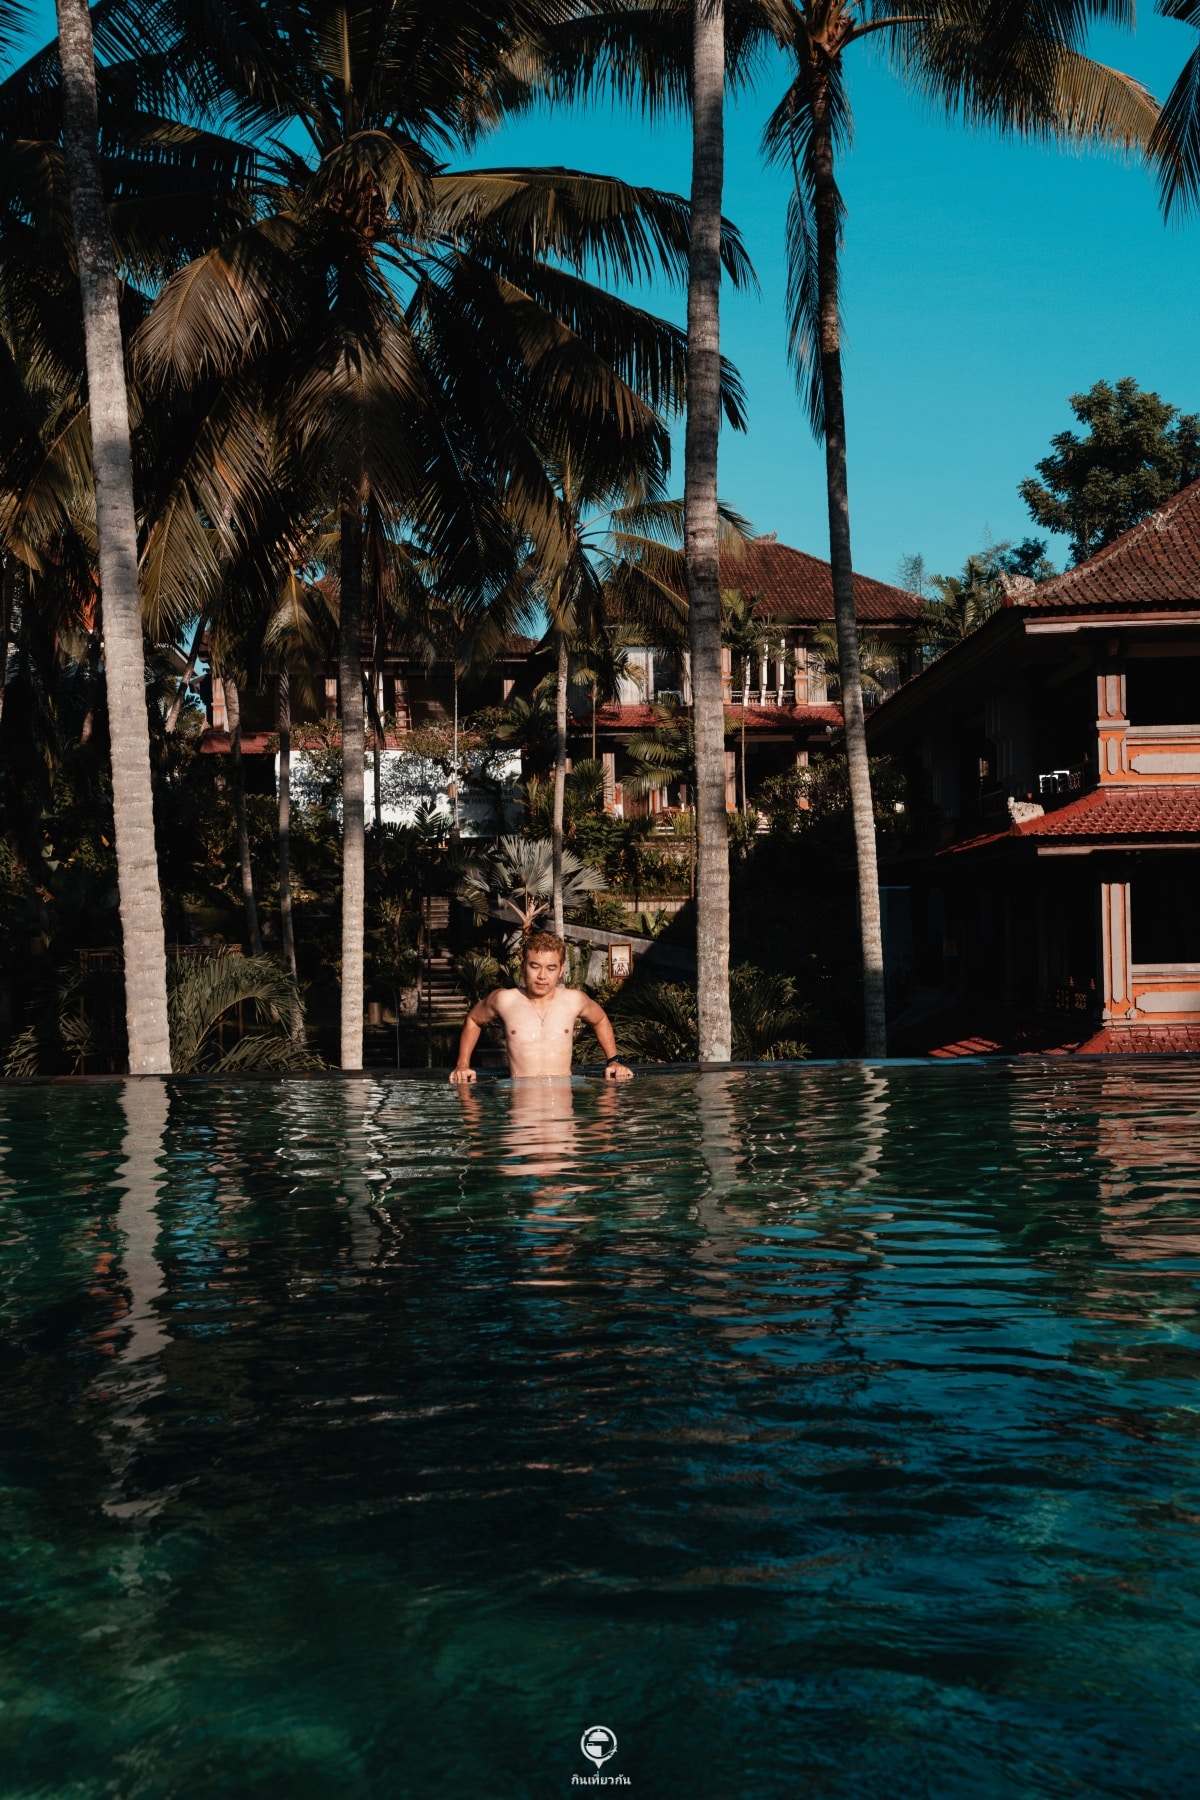 The Artini Dijiwa Ubud Swimming Pool